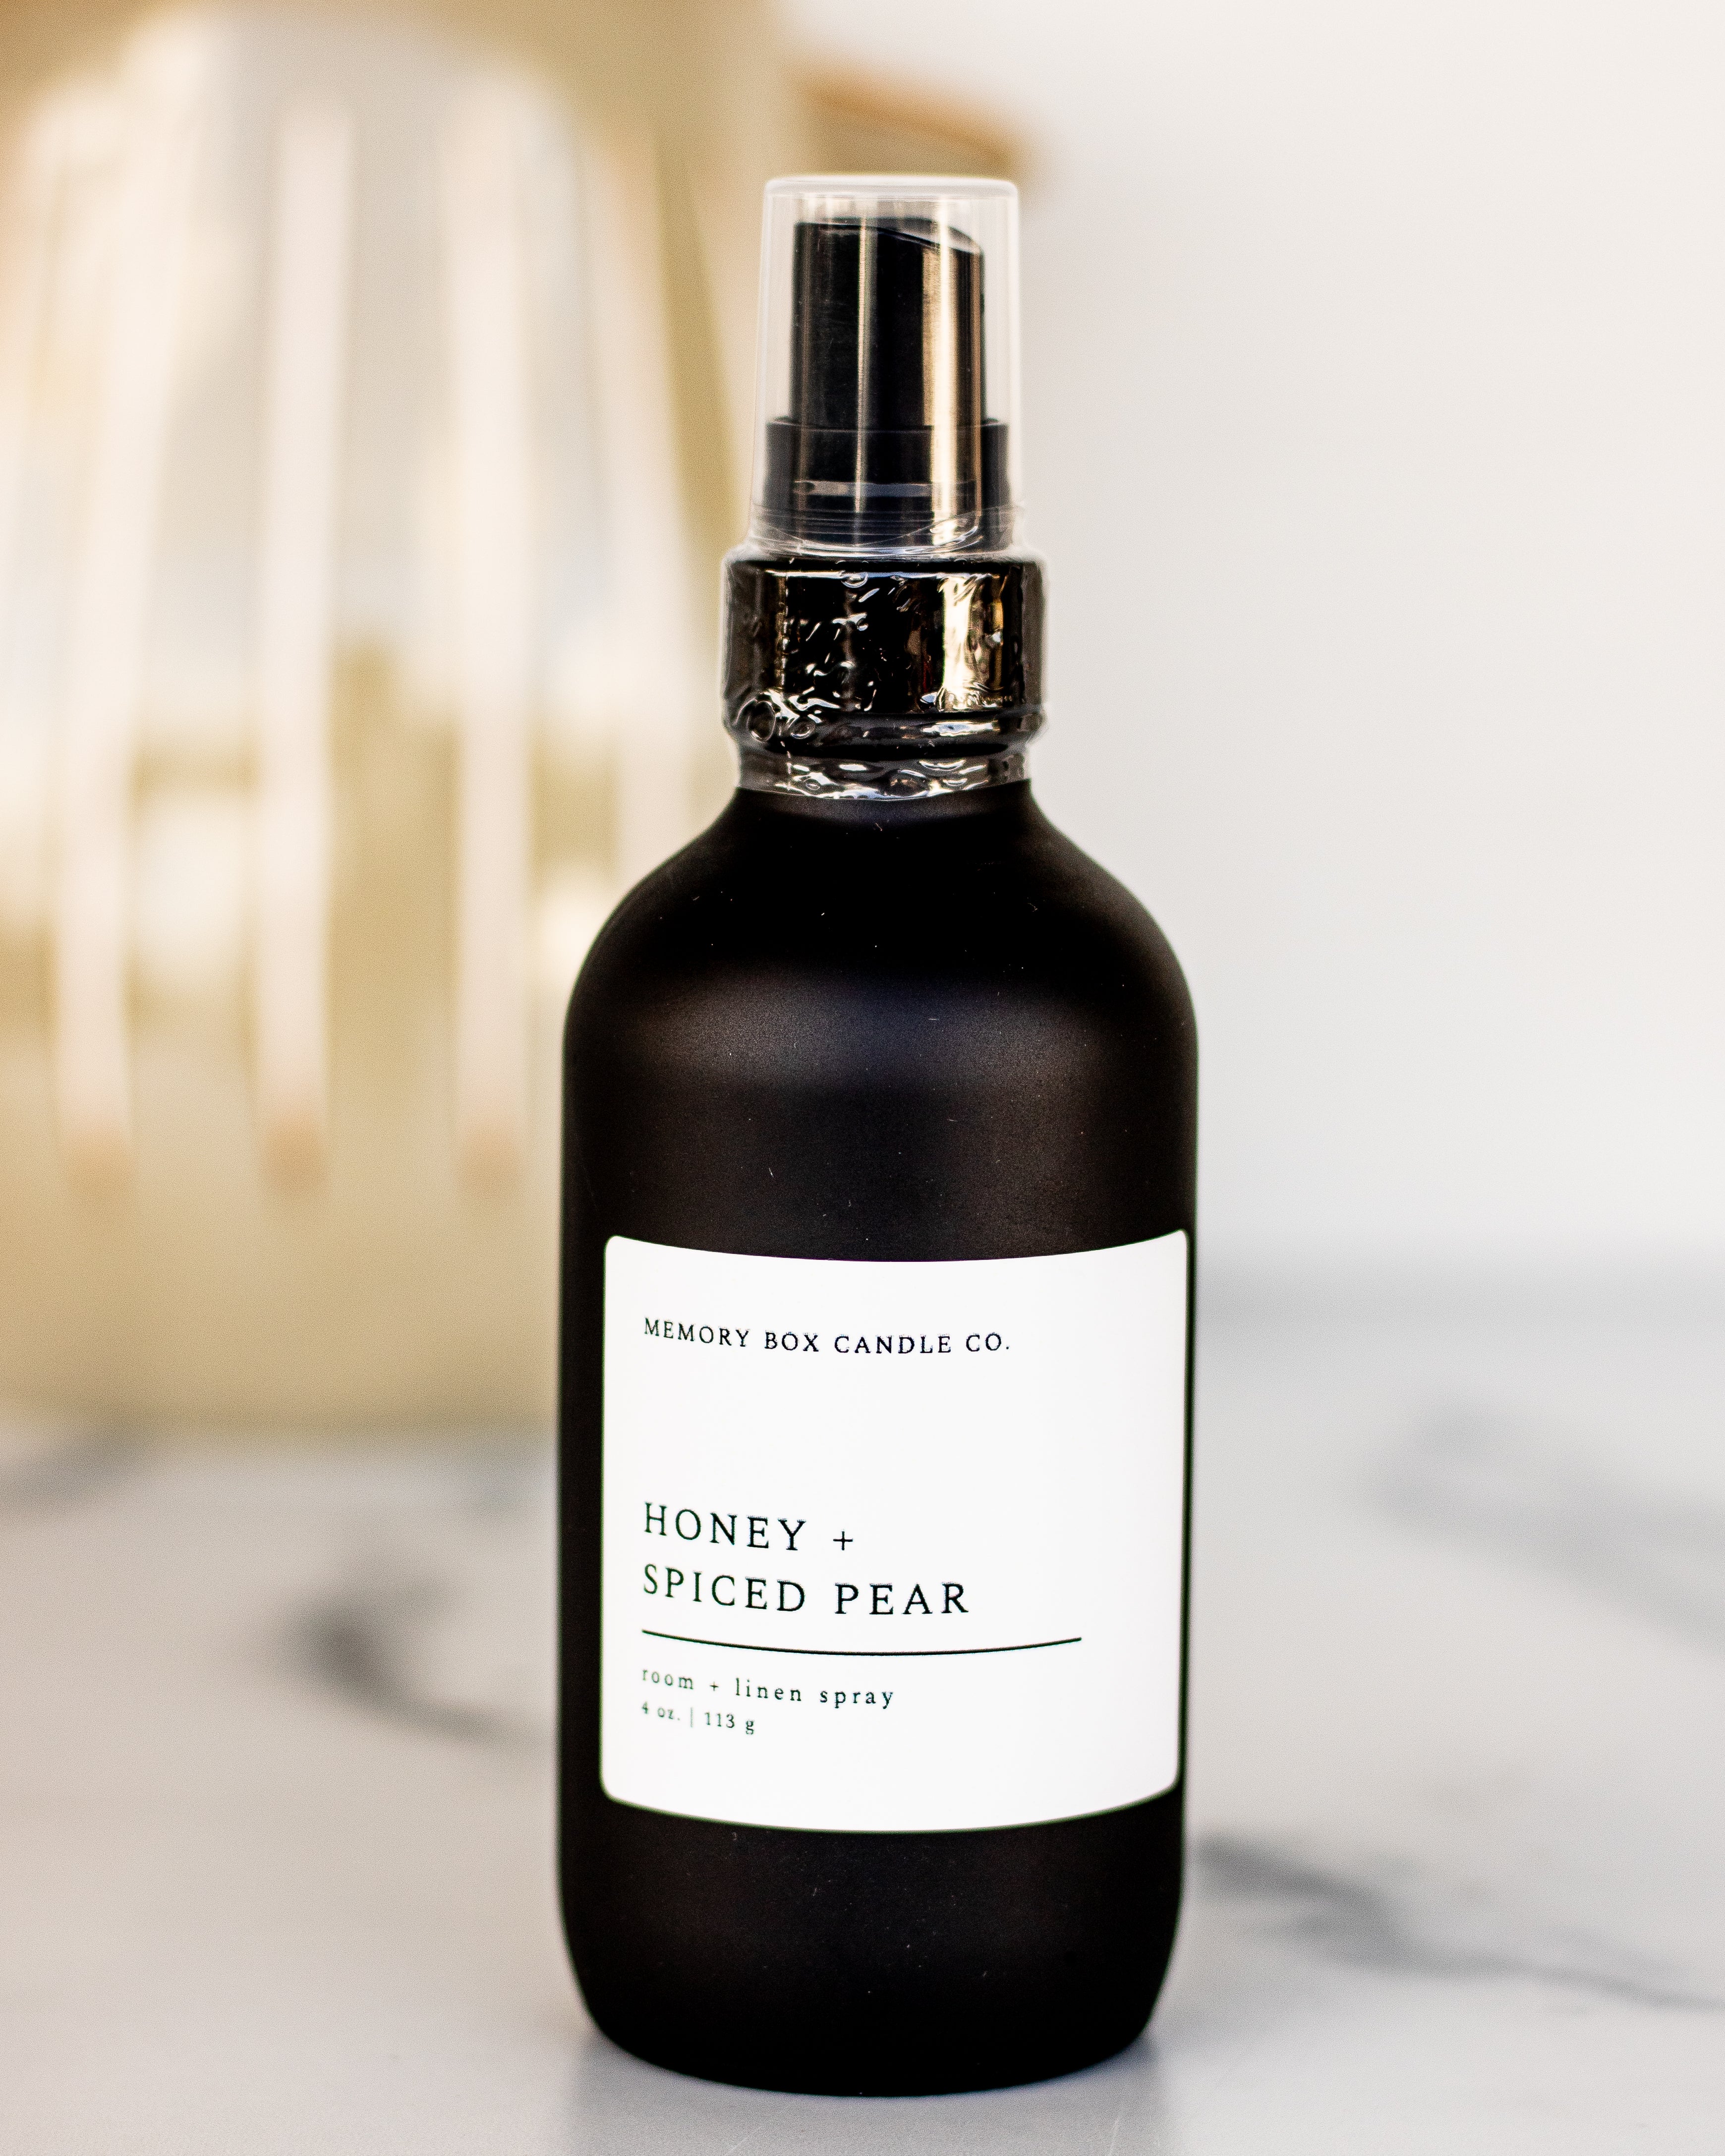 Honey + Spiced Pear | Room & Linen Spray